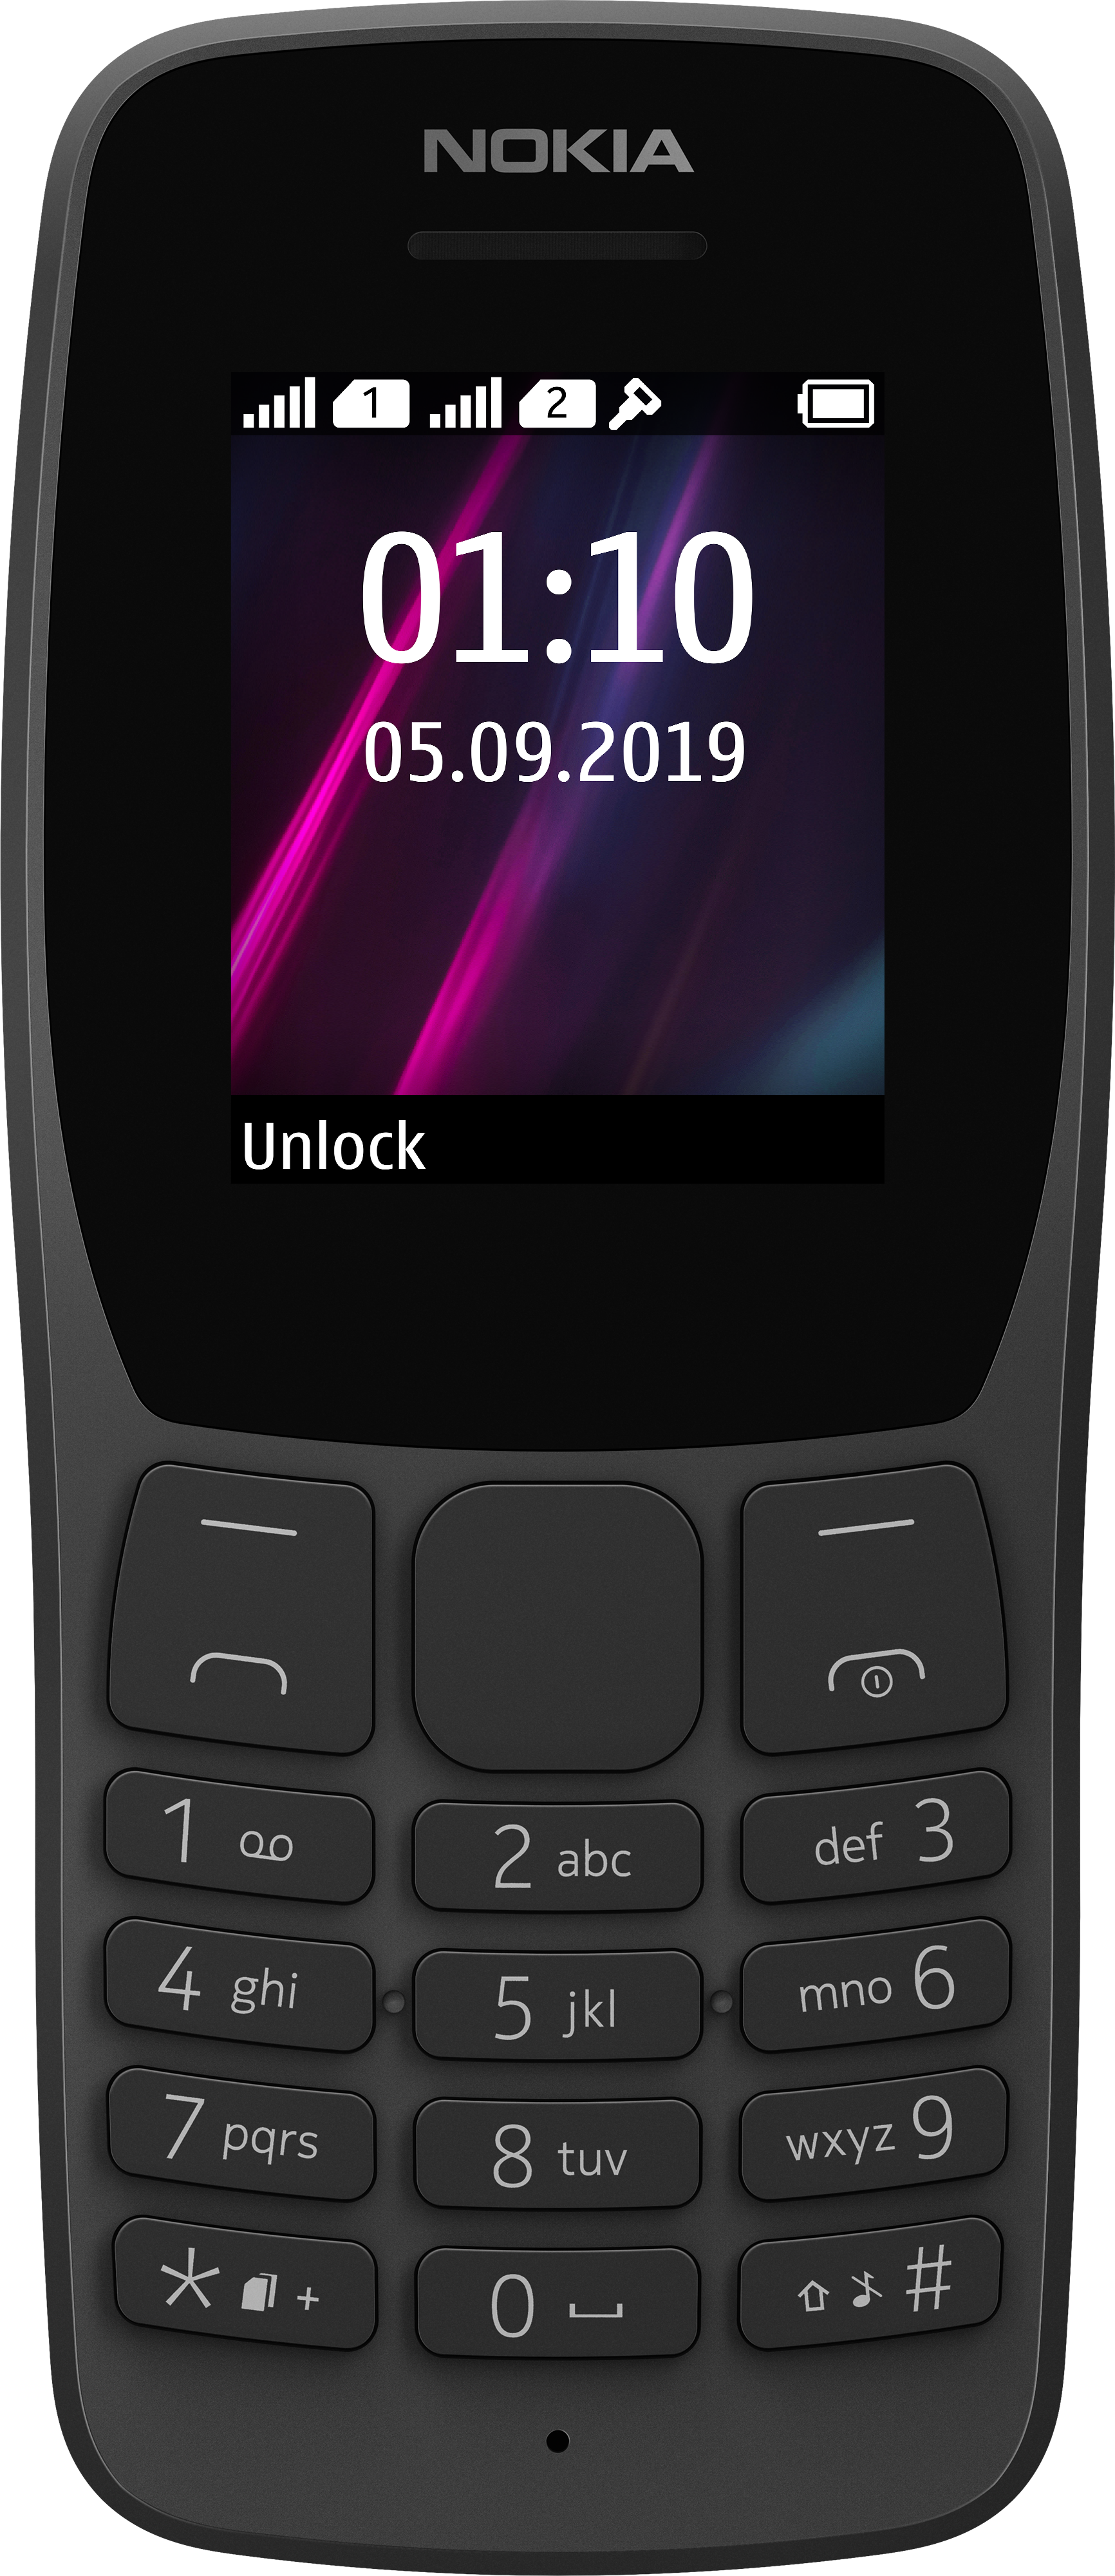 Típicamente Honestidad Auroch Los últimos smartphones y teléfonos Nokia con Android